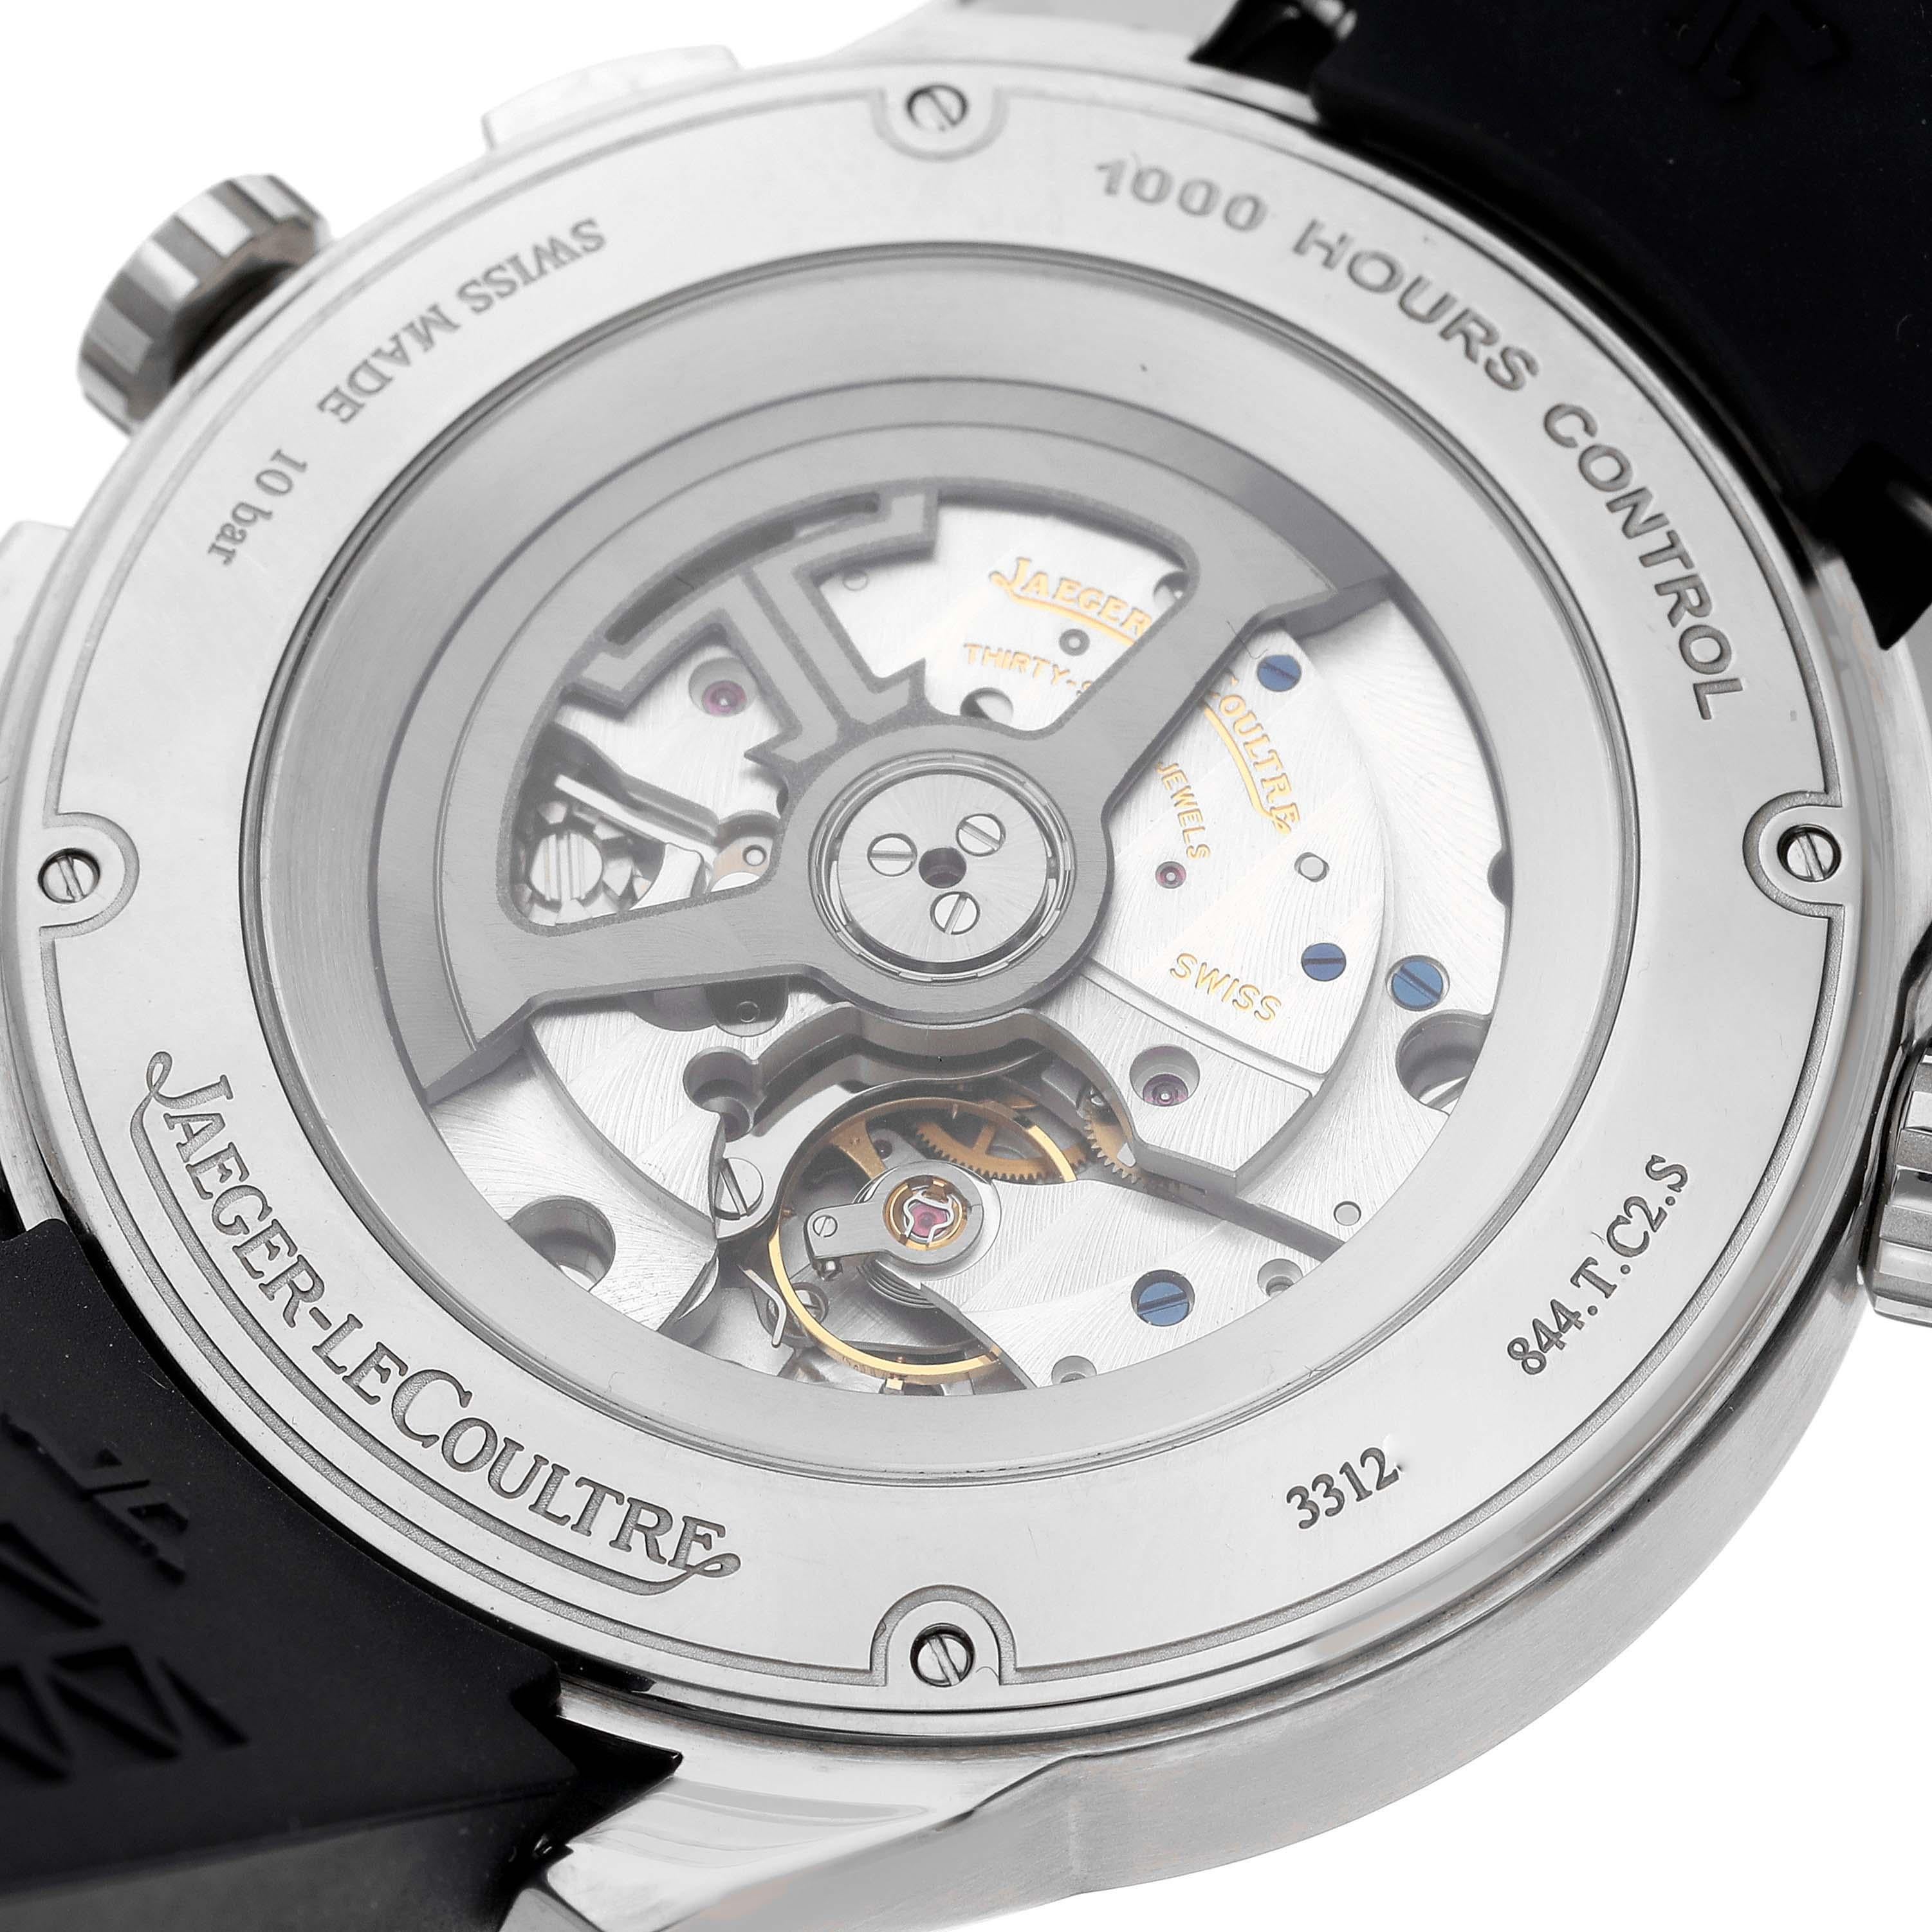 Jaeger LeCoultre Polaris World Time Titanium Mens Watch 844.T.C2.S Q905T480 For Sale 3